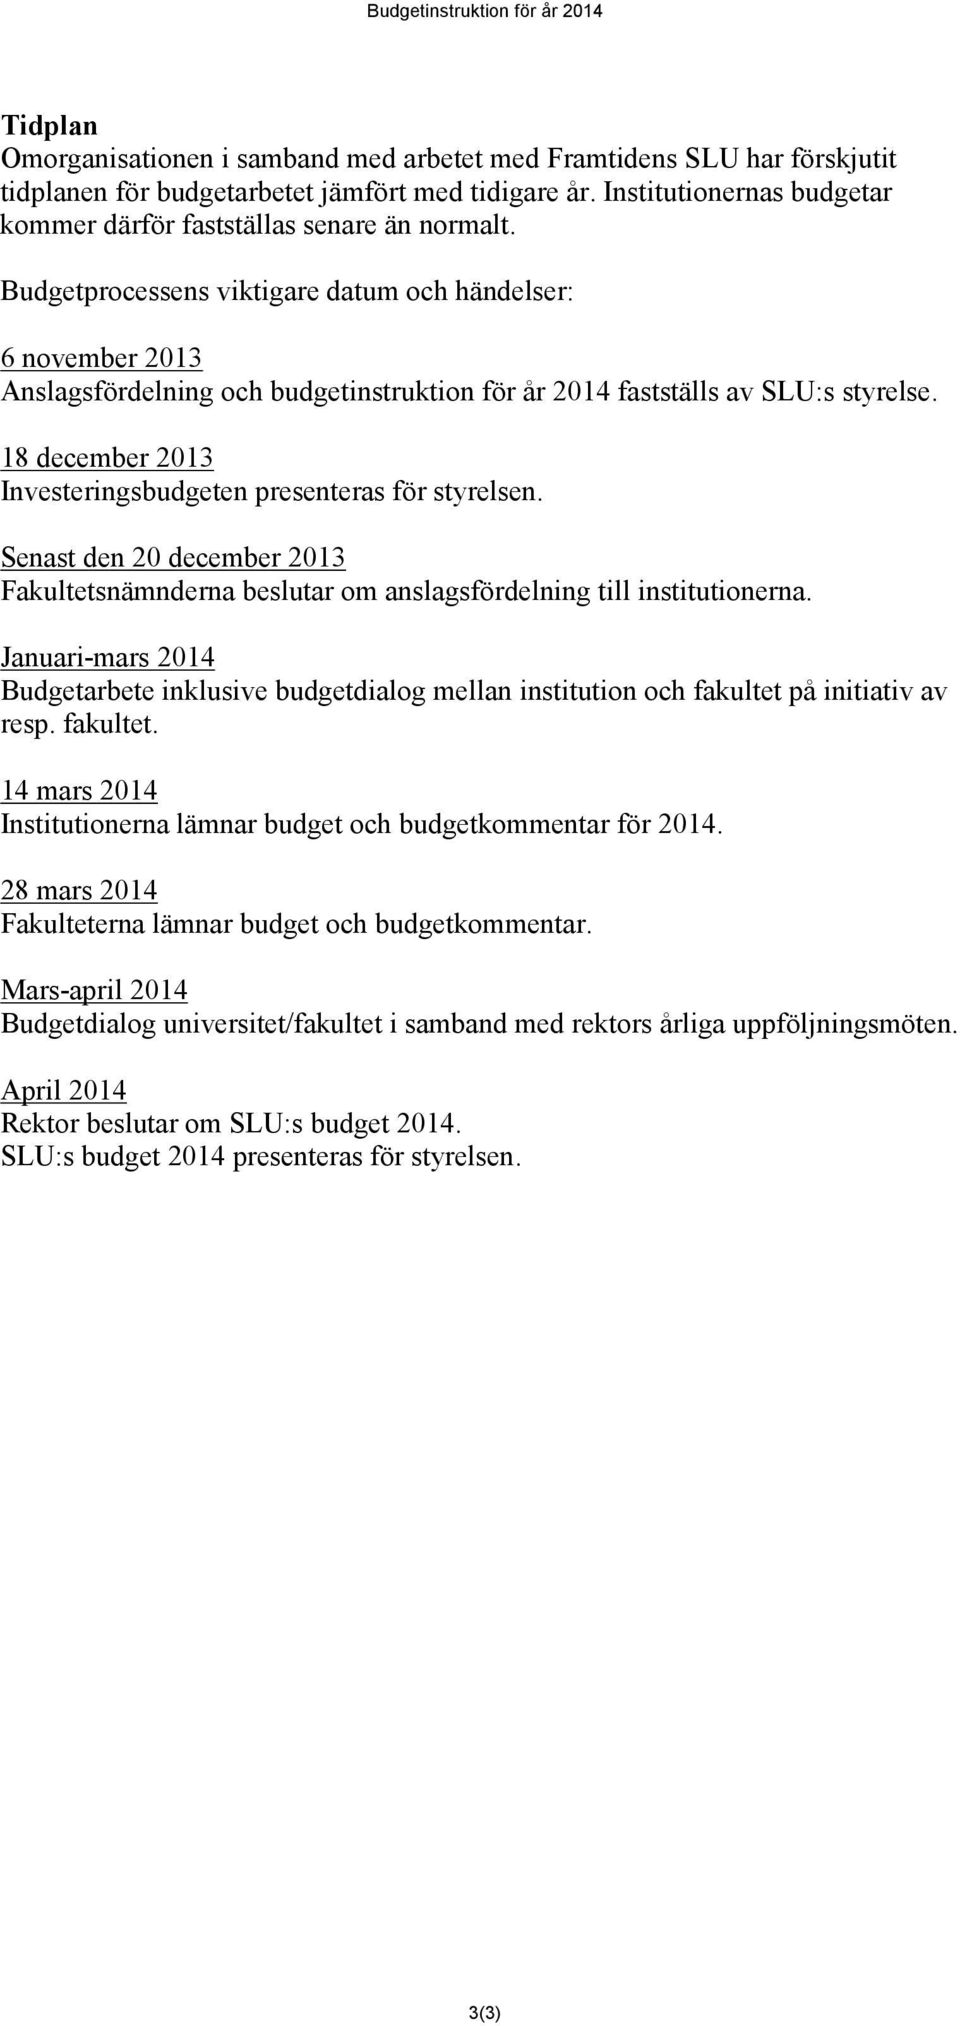 Budgetprocessens viktigare datum och händelser: 6 november 2013 Anslagsfördelning och budgetinstruktion för år 2014 fastställs av SLU:s styrelse.